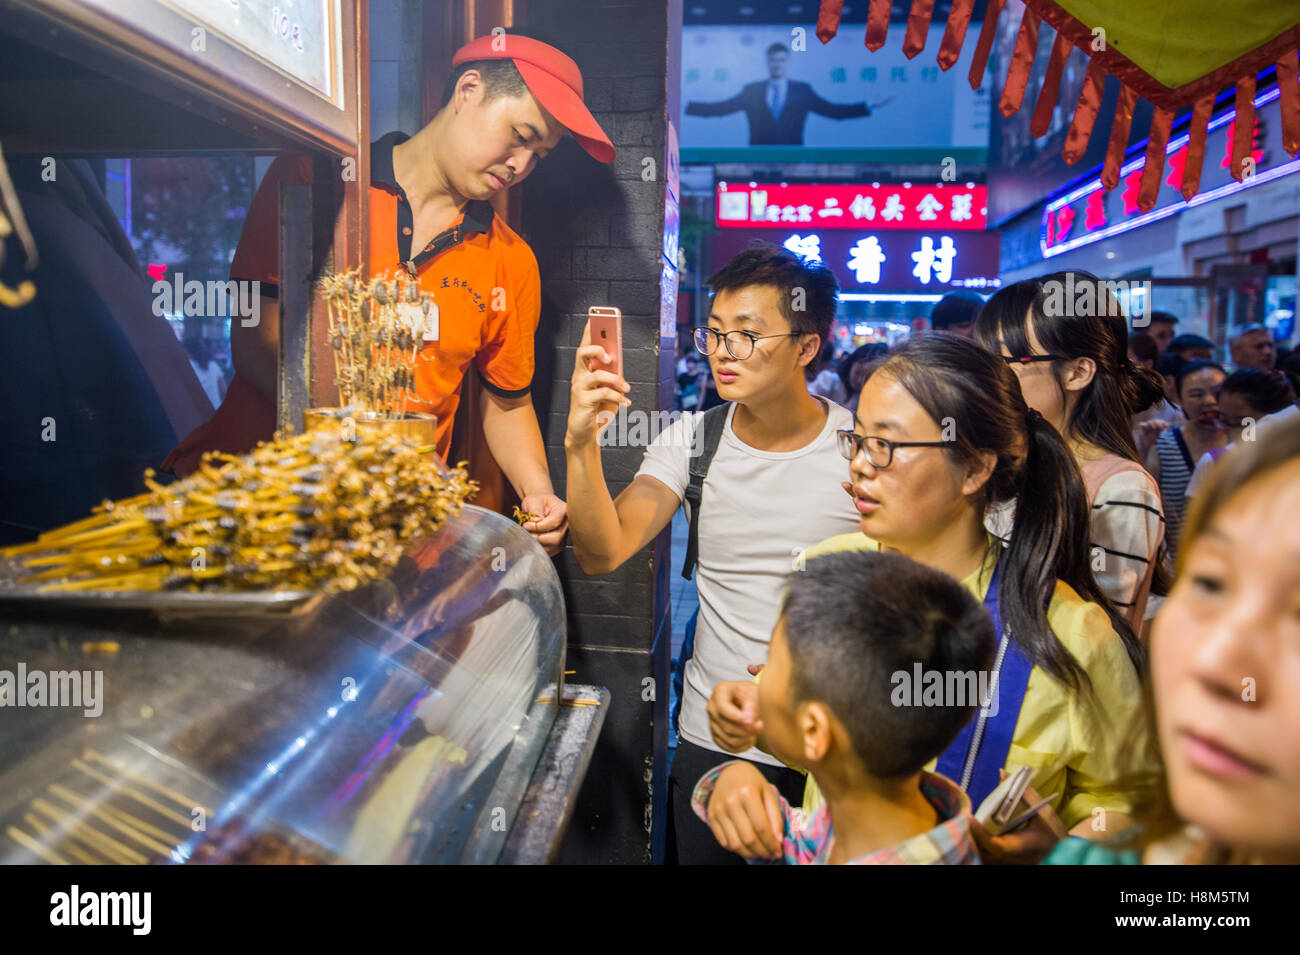 Pechino, Cina - Maschio turistica prendendo una foto sul suo telefono delle cellule di scorpioni su bastoni in vendita presso la Donghuamen Snack notte M Foto Stock